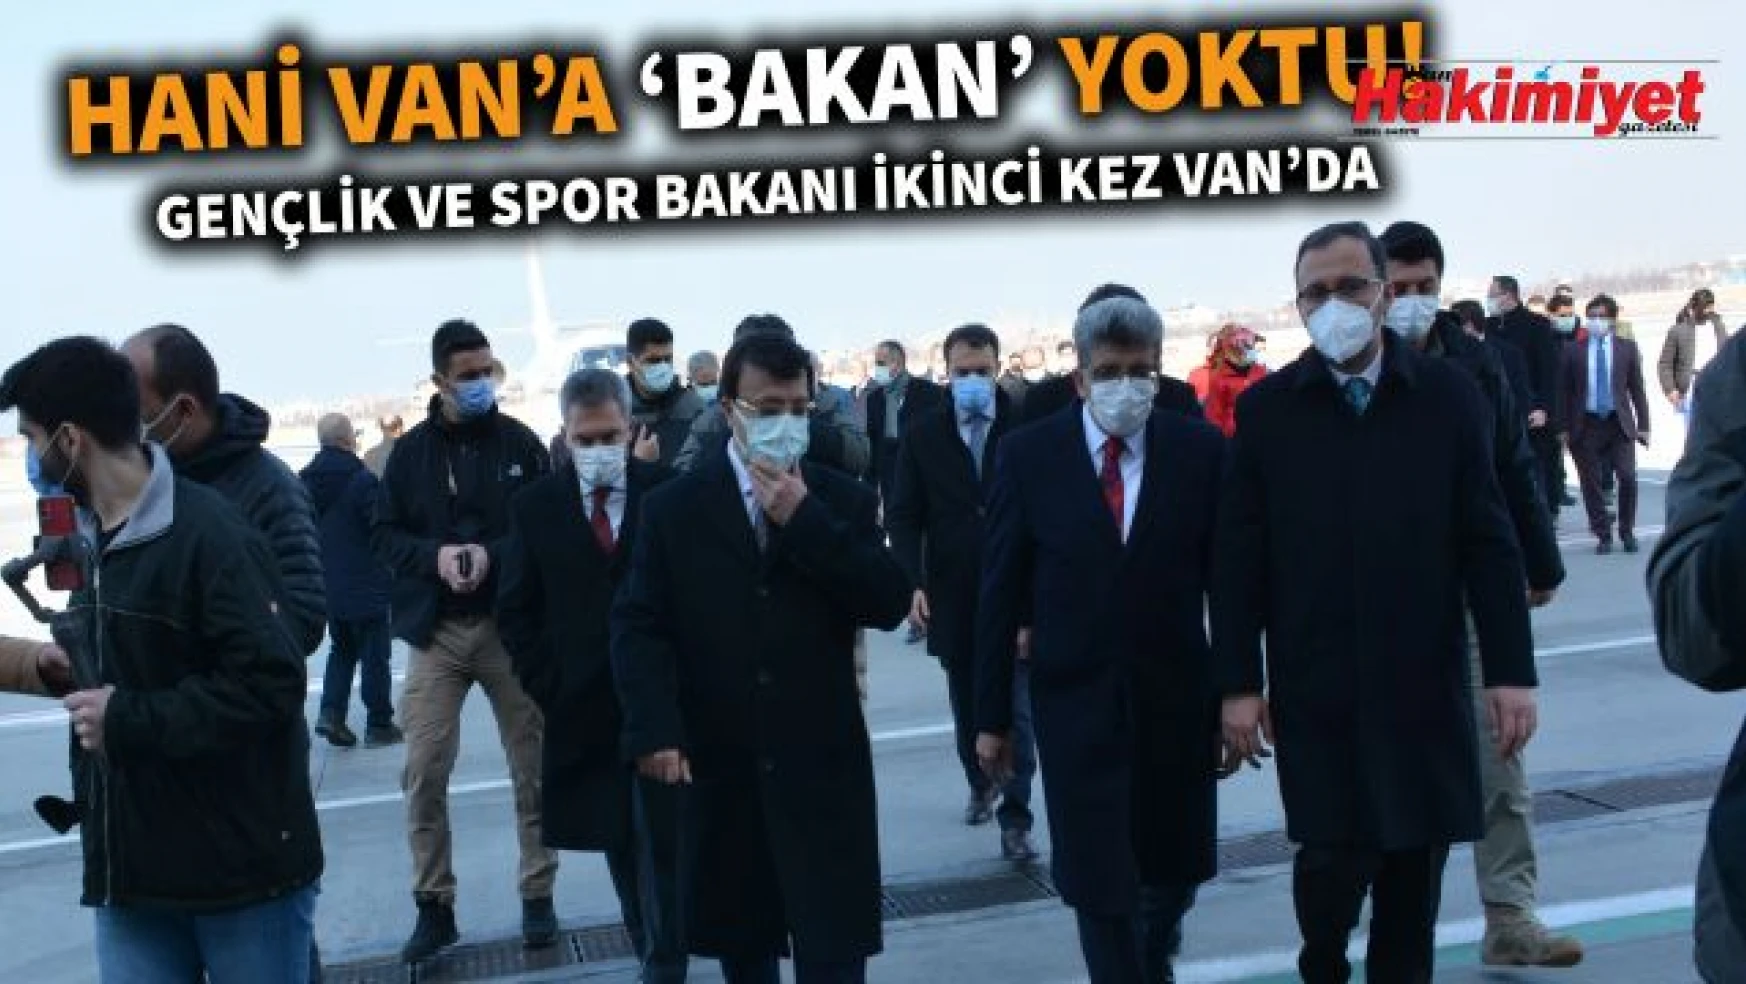 Gençlik ve Spor Bakanı Mehmet Muharrem Kasapoğlu Van'da